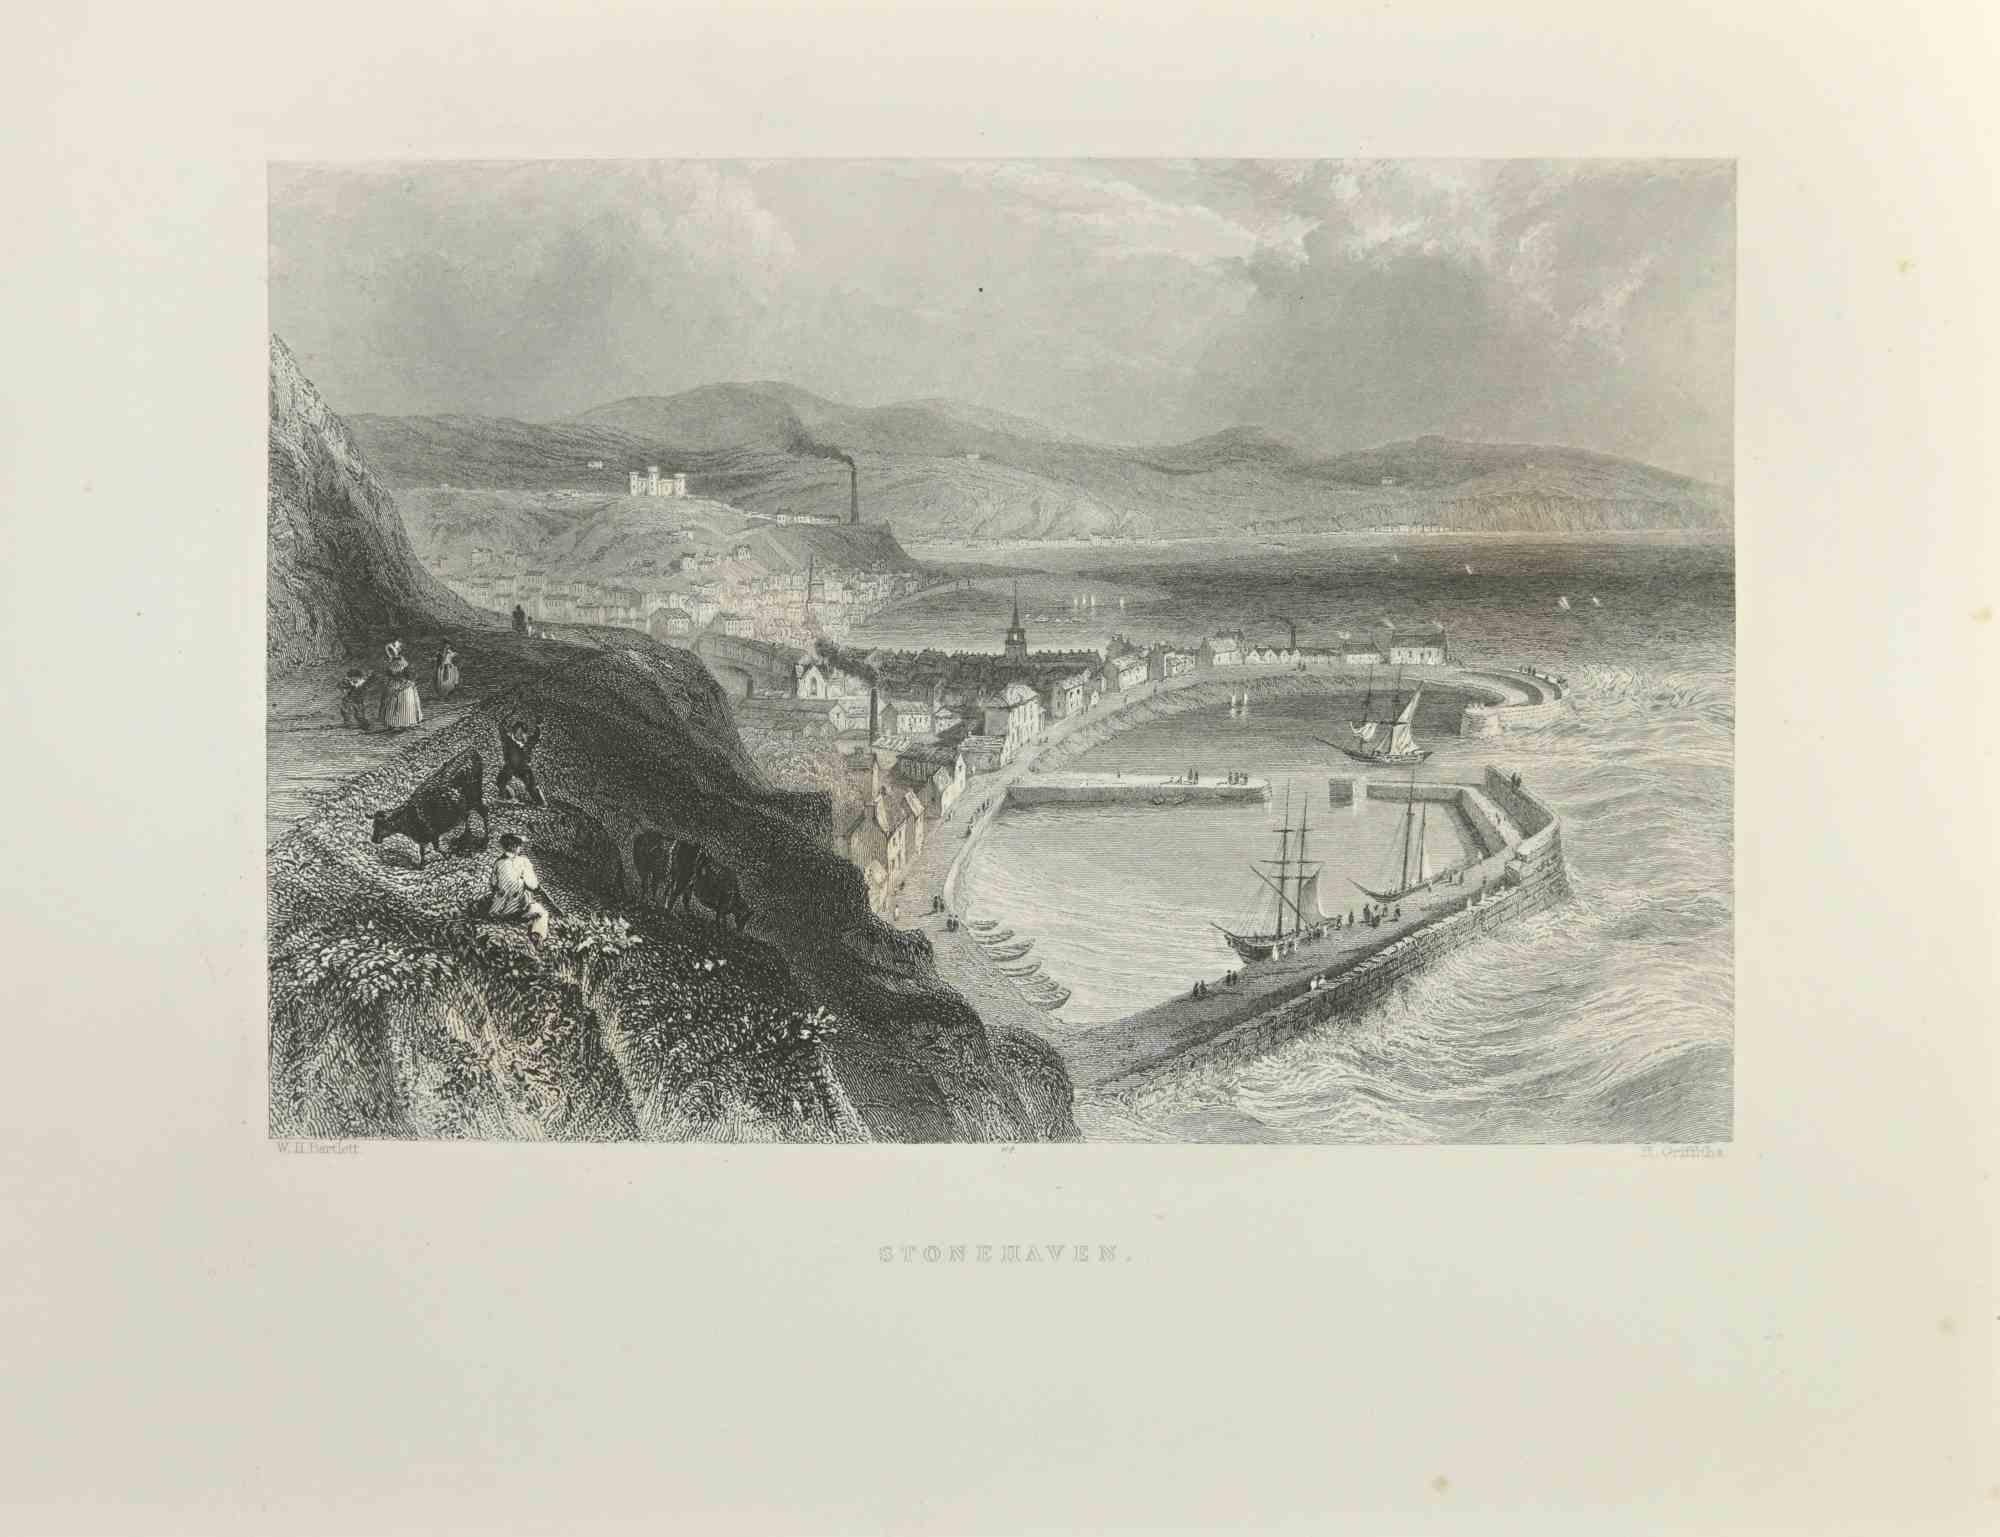 Stonehaven – Radierung von W.H. Bartlett – 1845